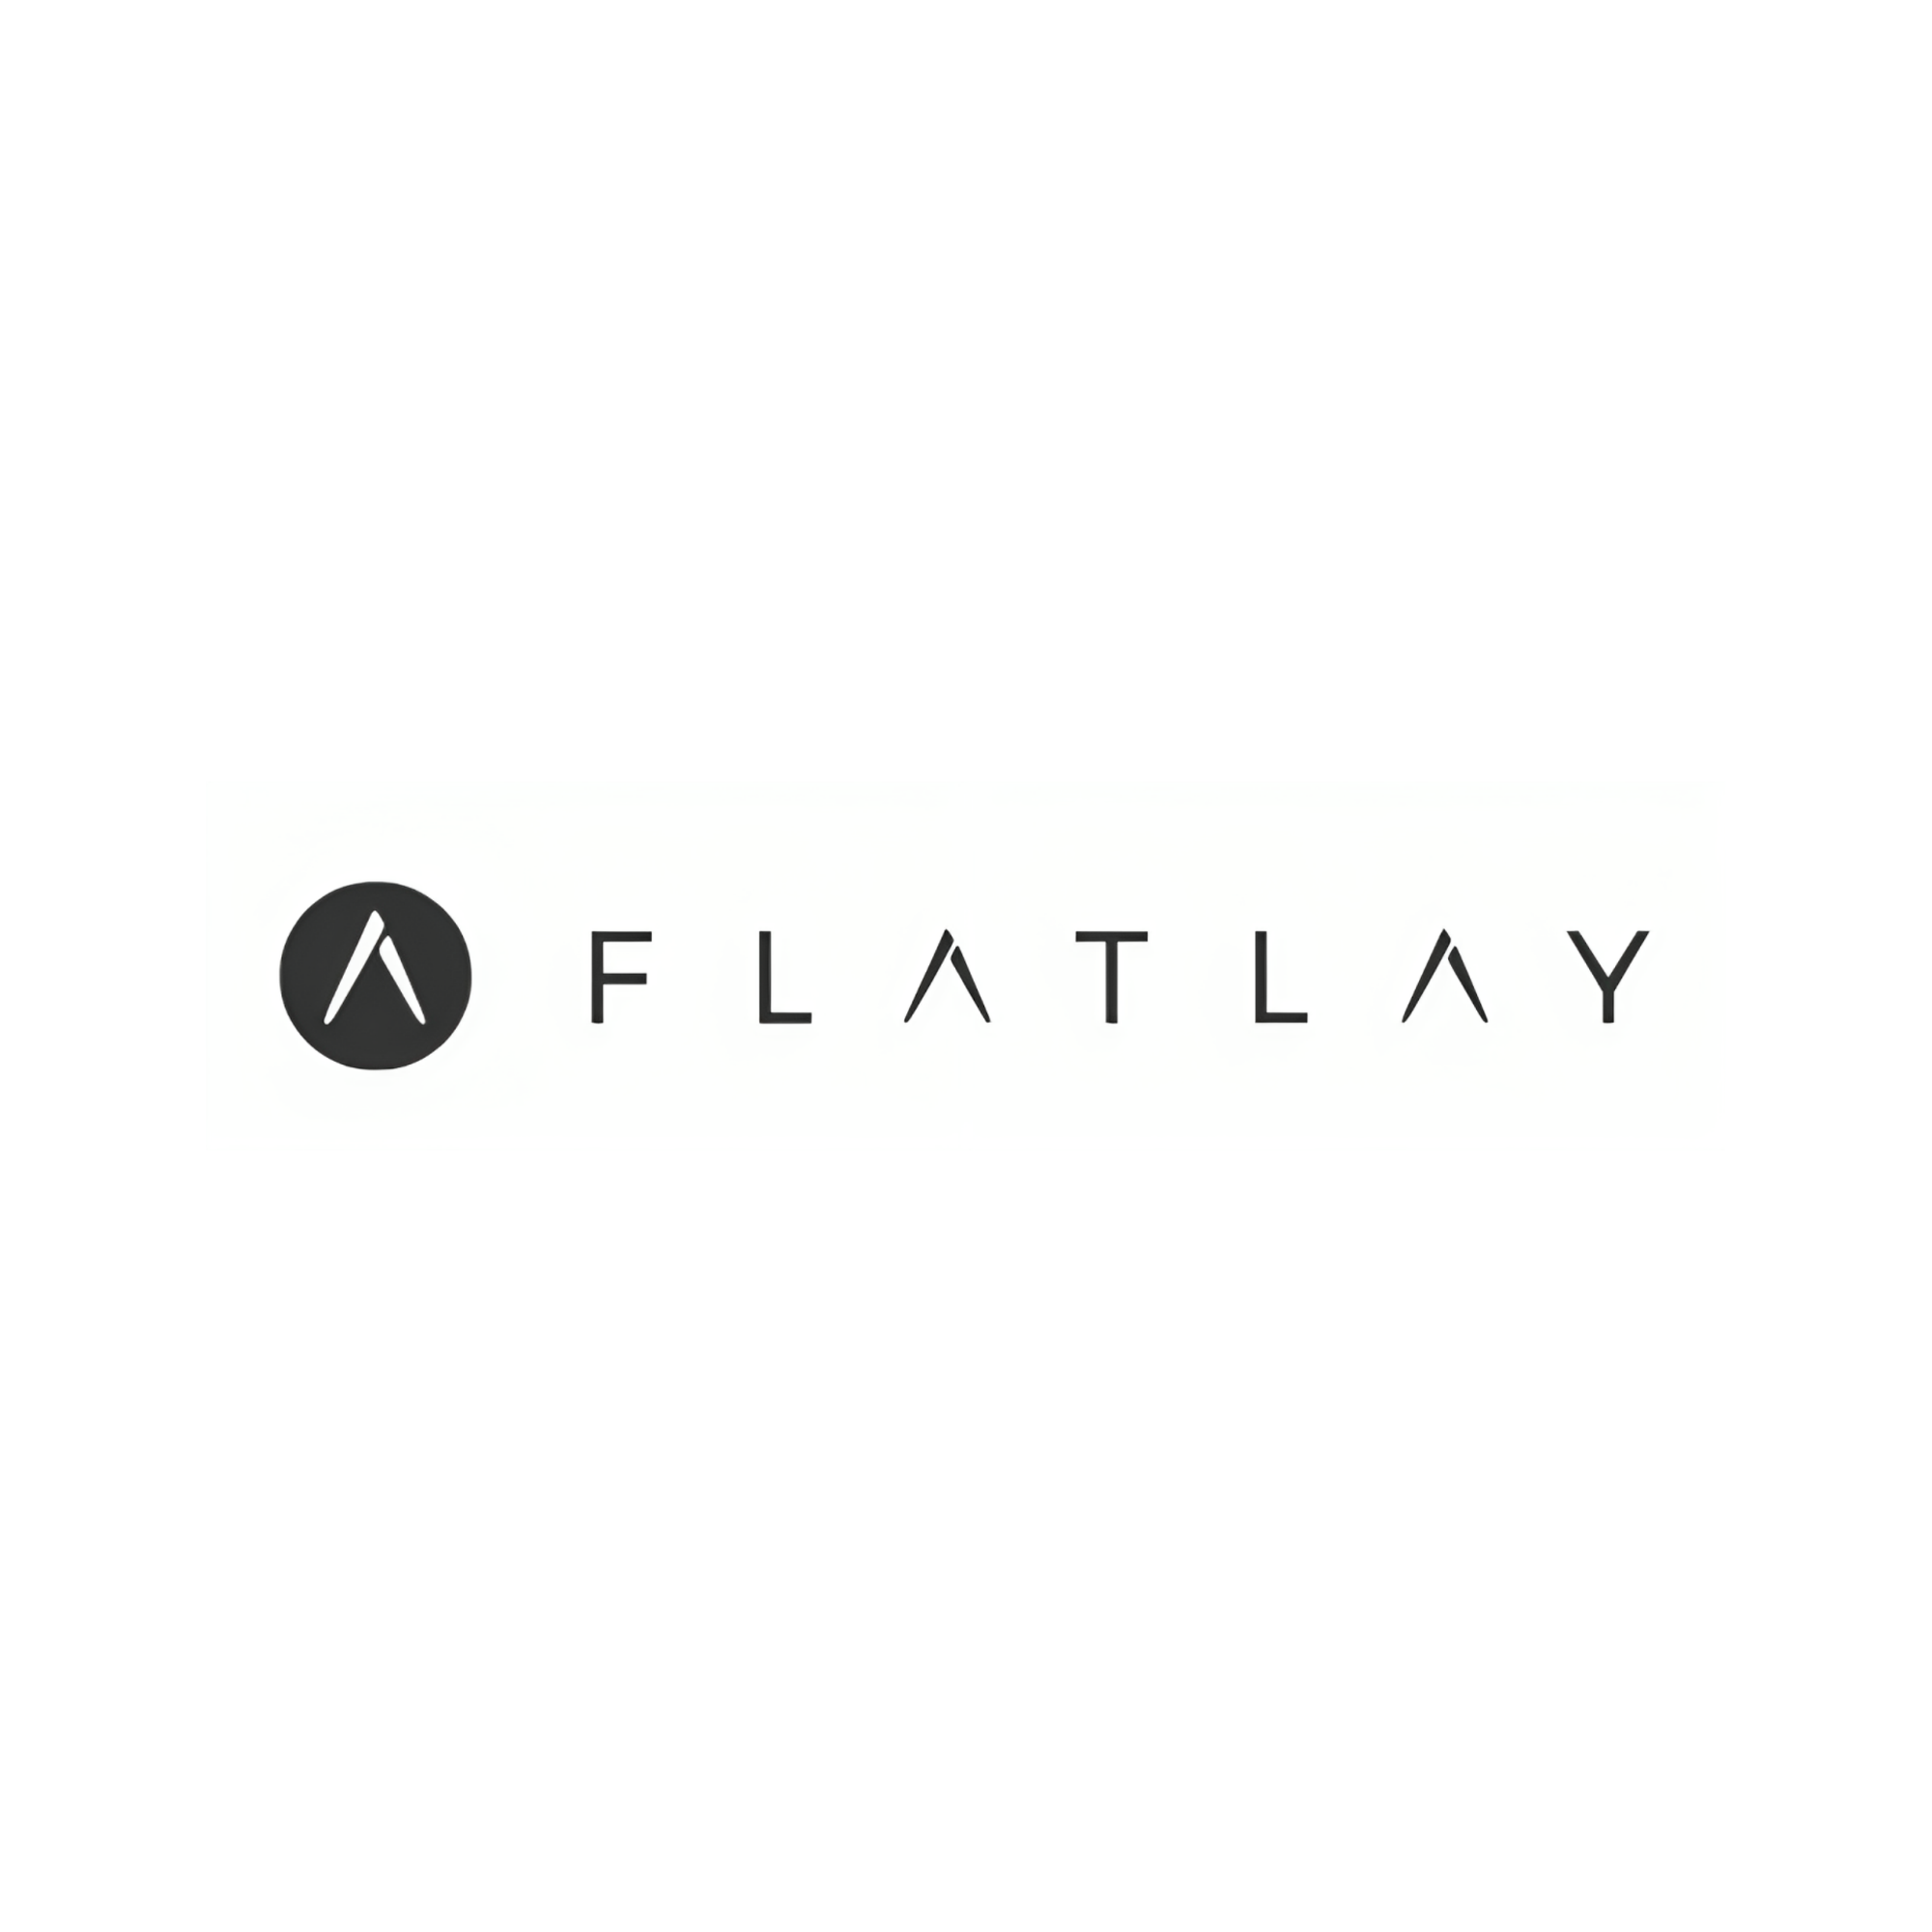 Flatlay